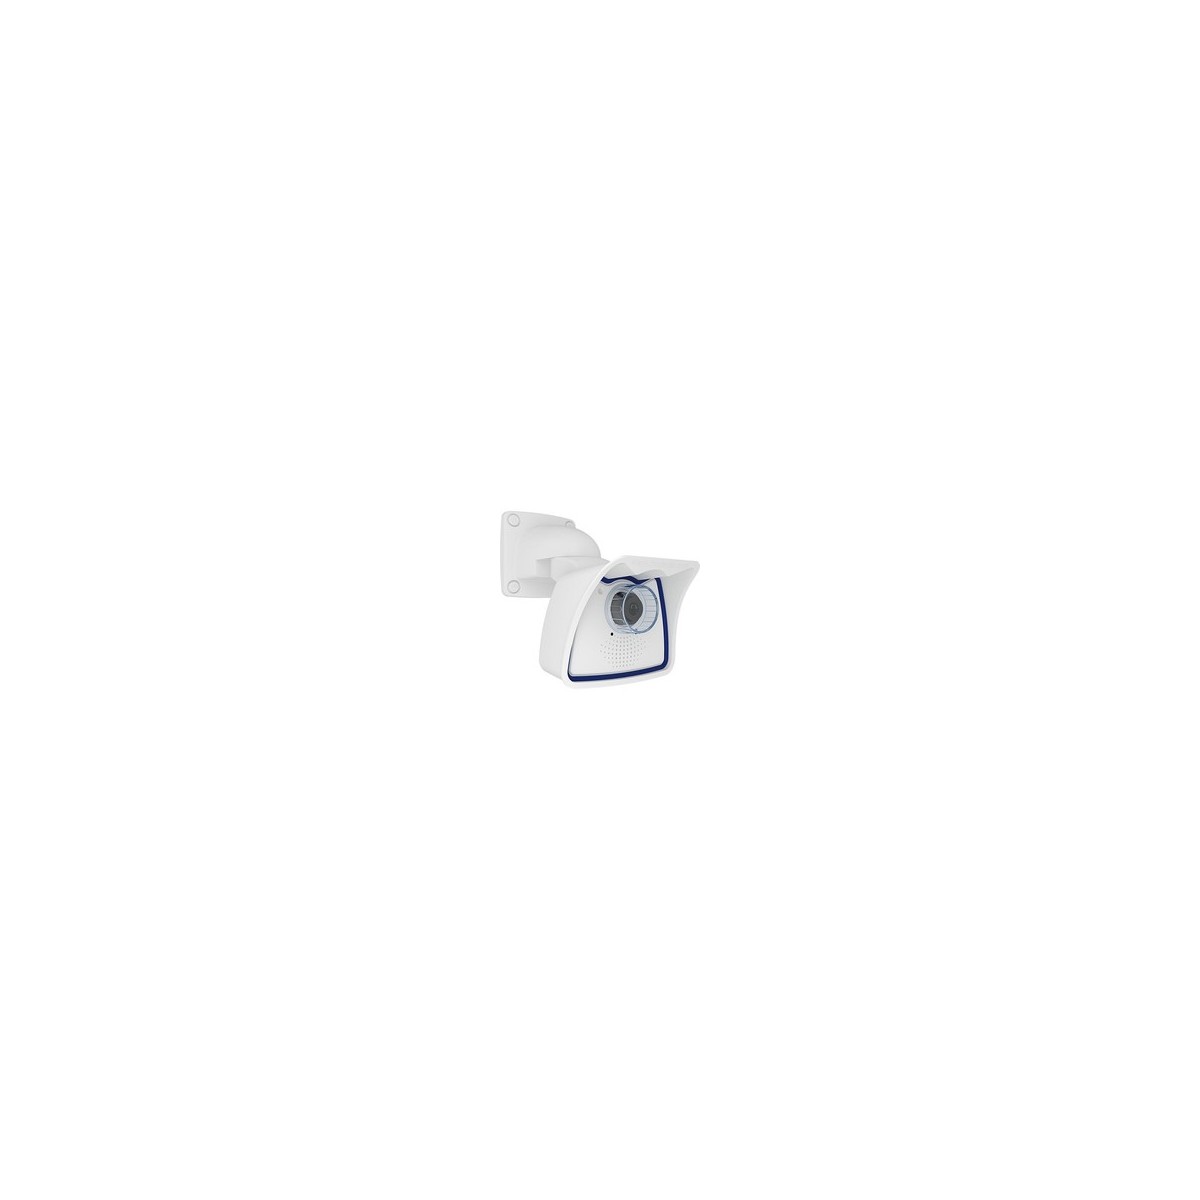 Mobotix Mx-M26B-6D036 - IP security camera - Indoor  outdoor - Wired - EN55032:2012 EN55022:2010 EN55024:2010 EN50121-4:2015 EN6